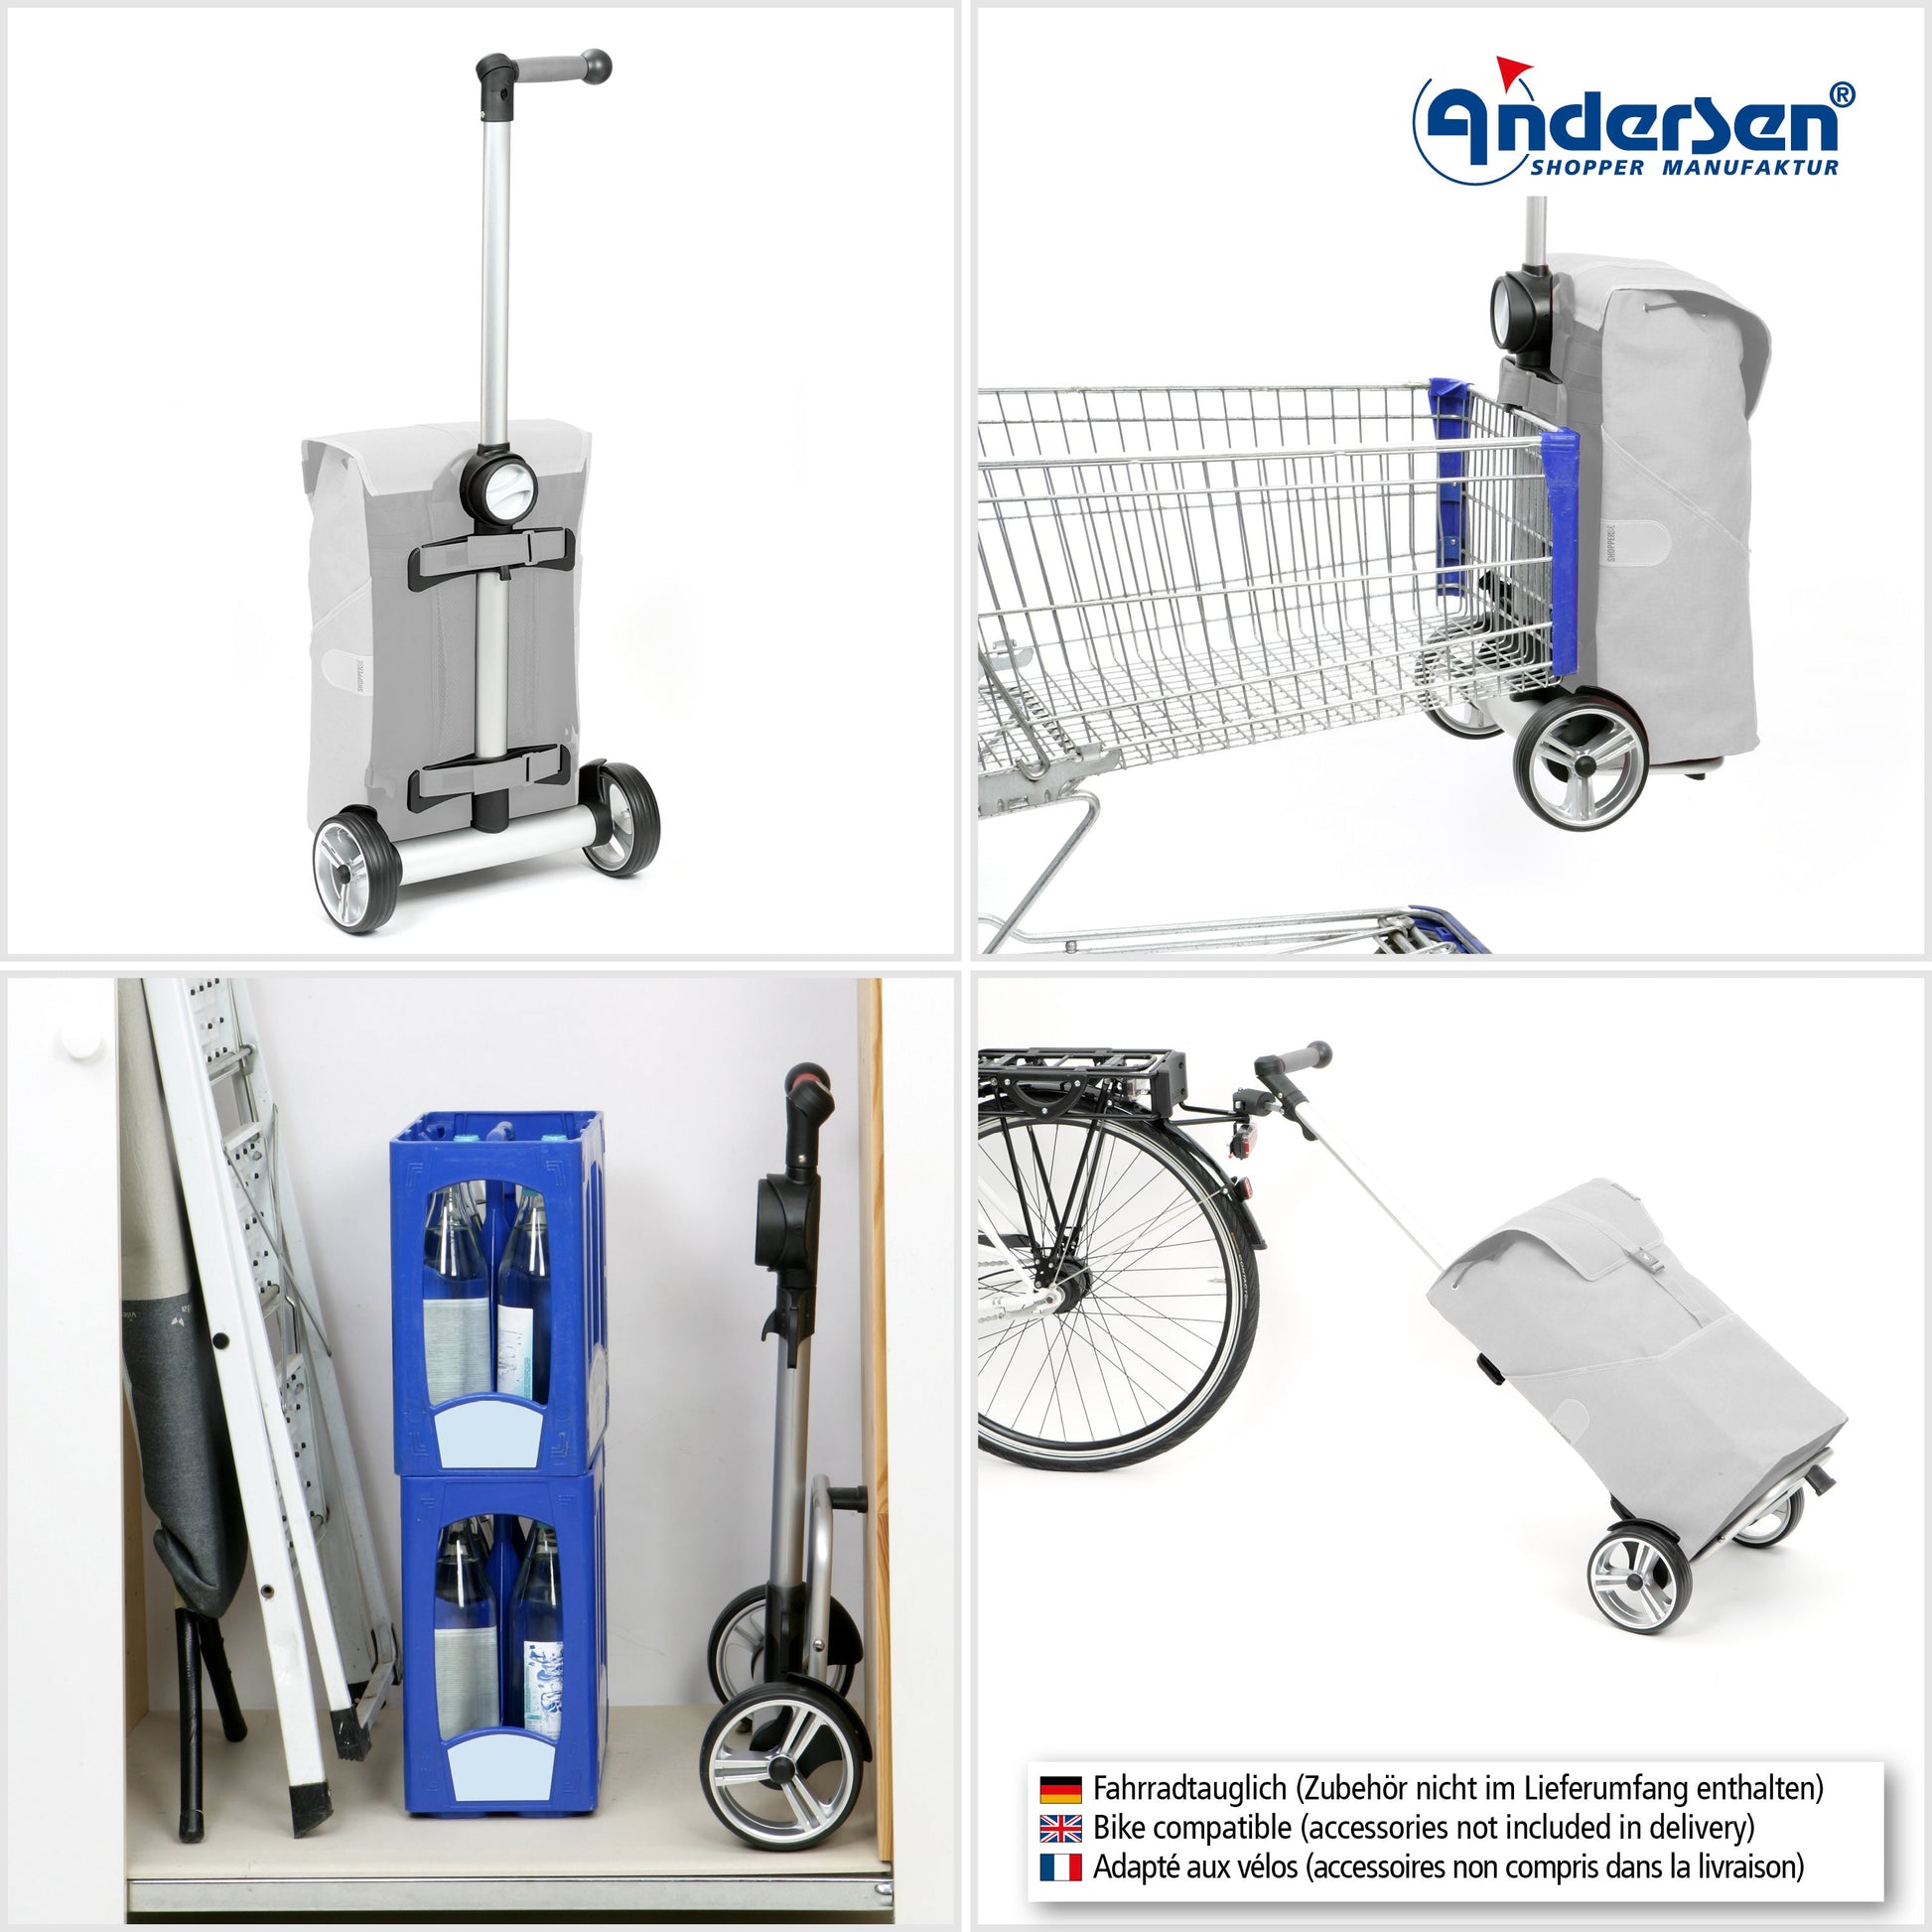 Andersen Shopper Manufaktur-Unus Shopper Eske braun-www.shopping-trolley.ch-bild5